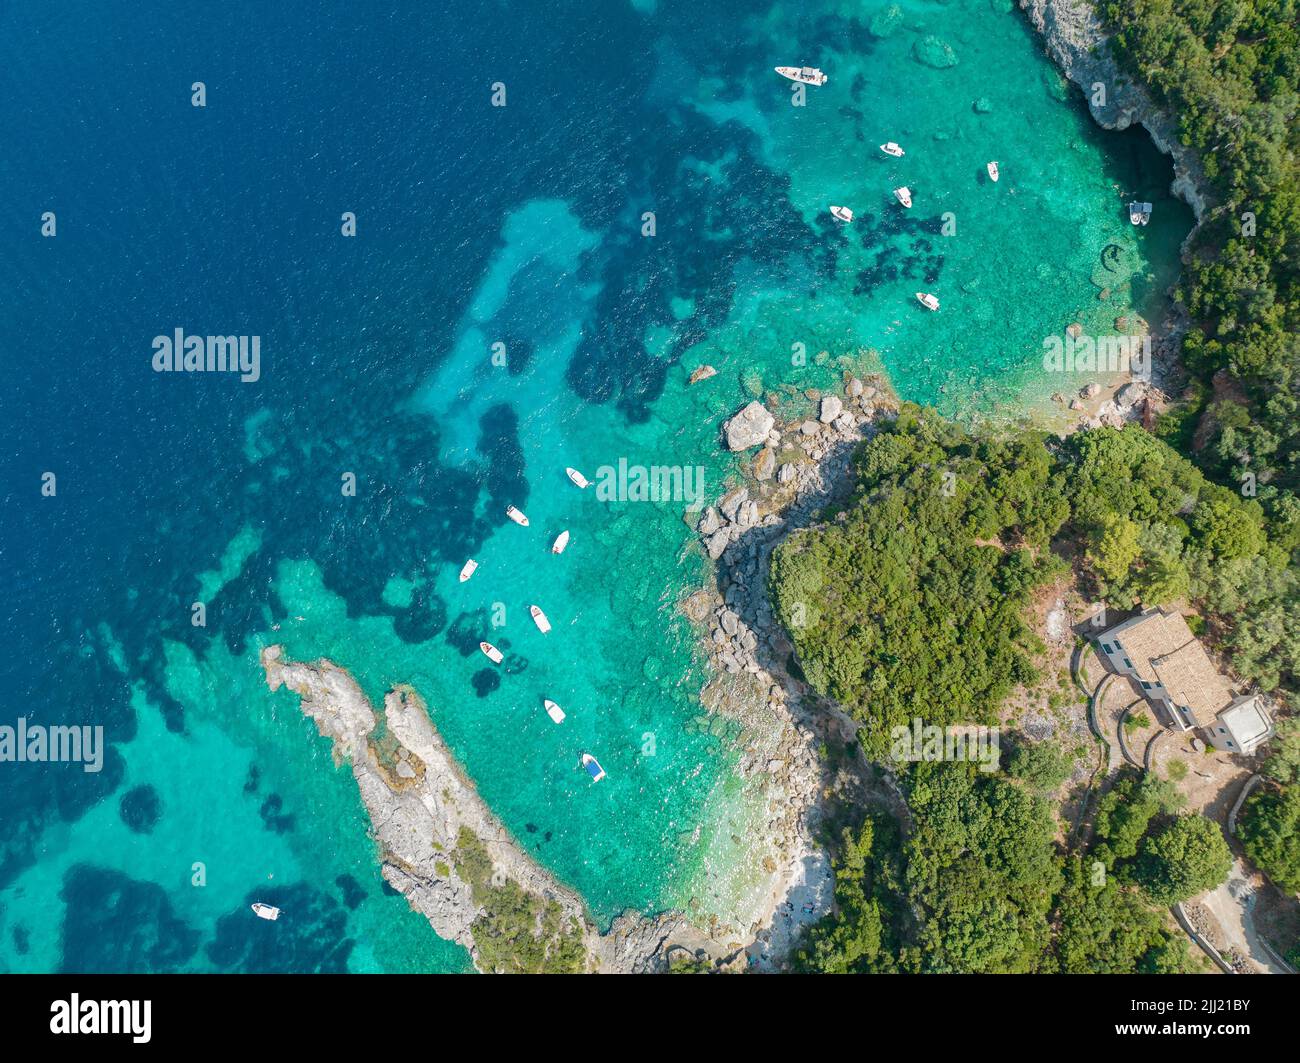 Vista aérea de la playa de Klimatia, cerca de la playa de Limni en la isla de Corfú. Línea costera. Aguas transparentes y cristalinas, barcos amarrados. Grecia Foto de stock